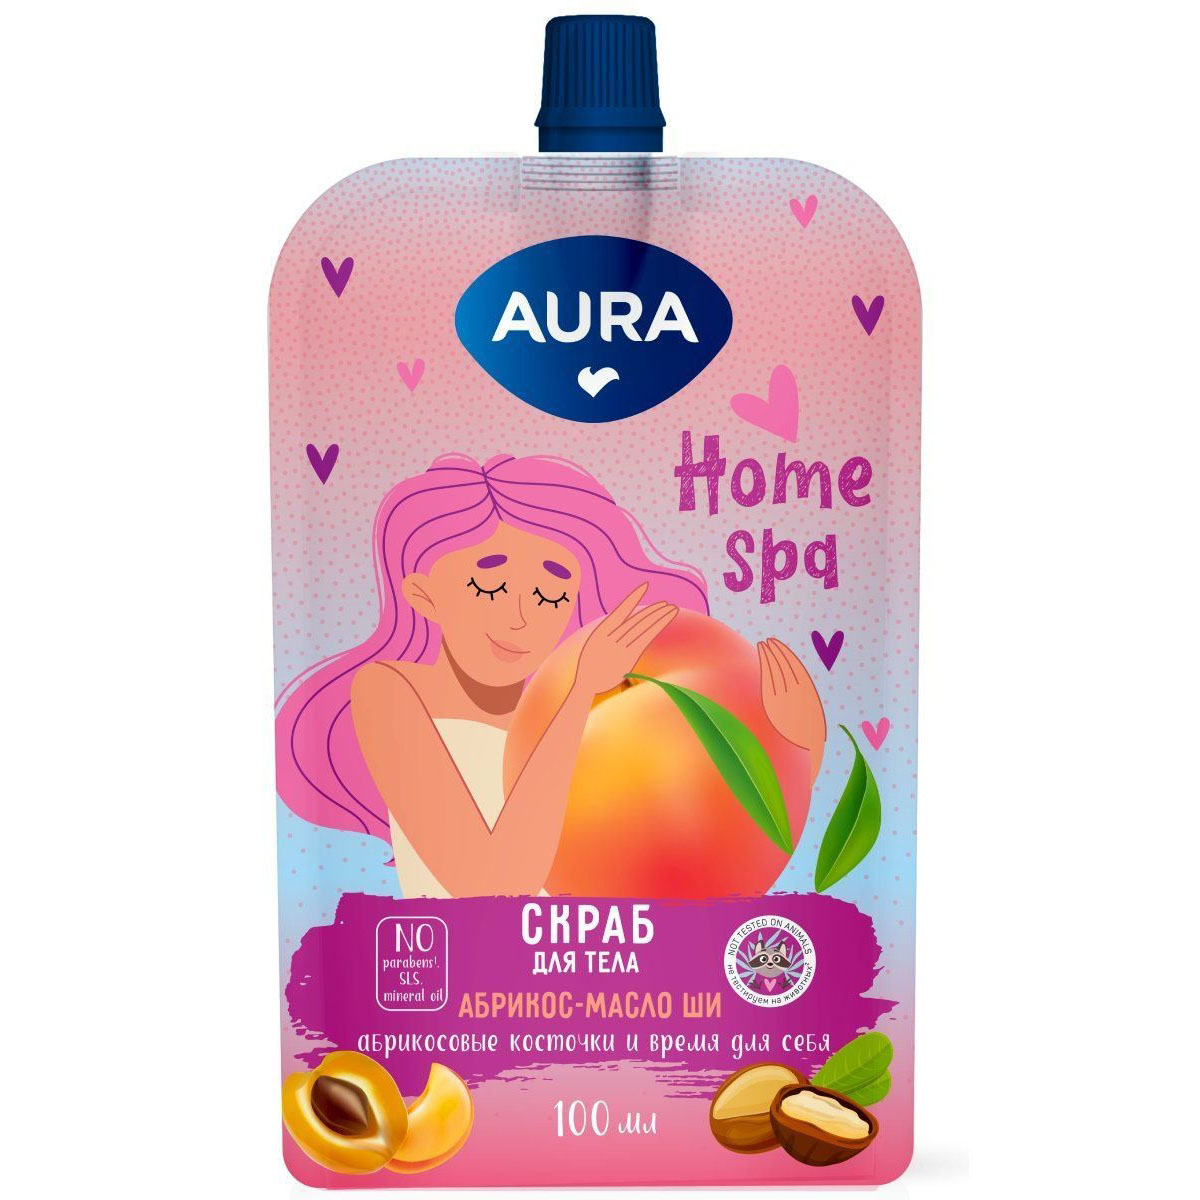 Aura Скраб для тела Абрикос и масло ши Home Spq, 100 мл (Aura, Beauty) цена и фото